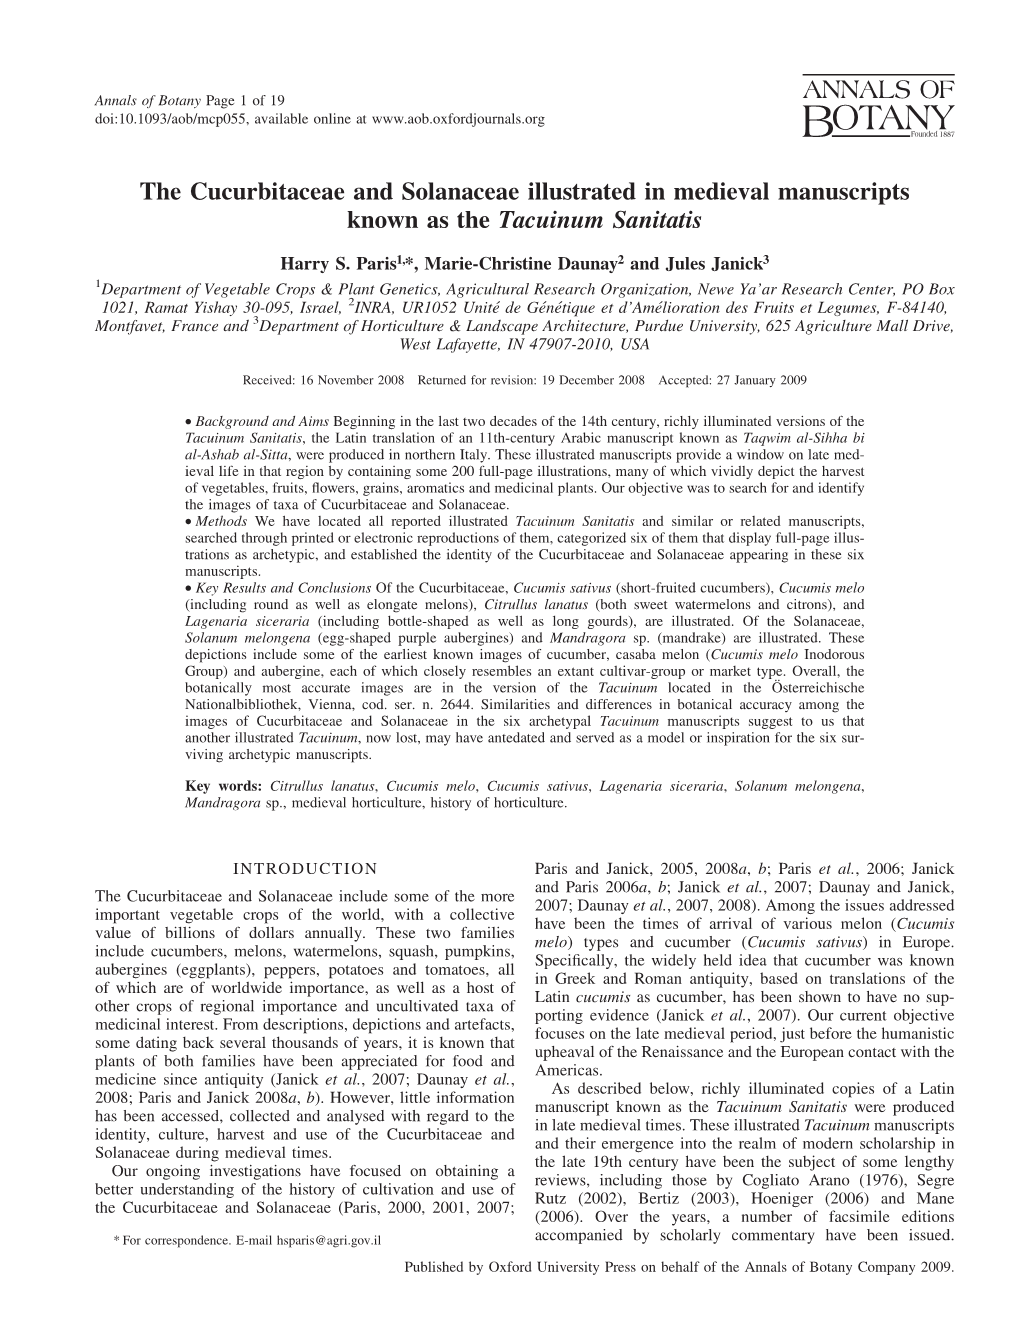 The Cucurbitaceae and Solanaceae Illustrated in Medieval Manuscripts Known As the Tacuinum Sanitatis